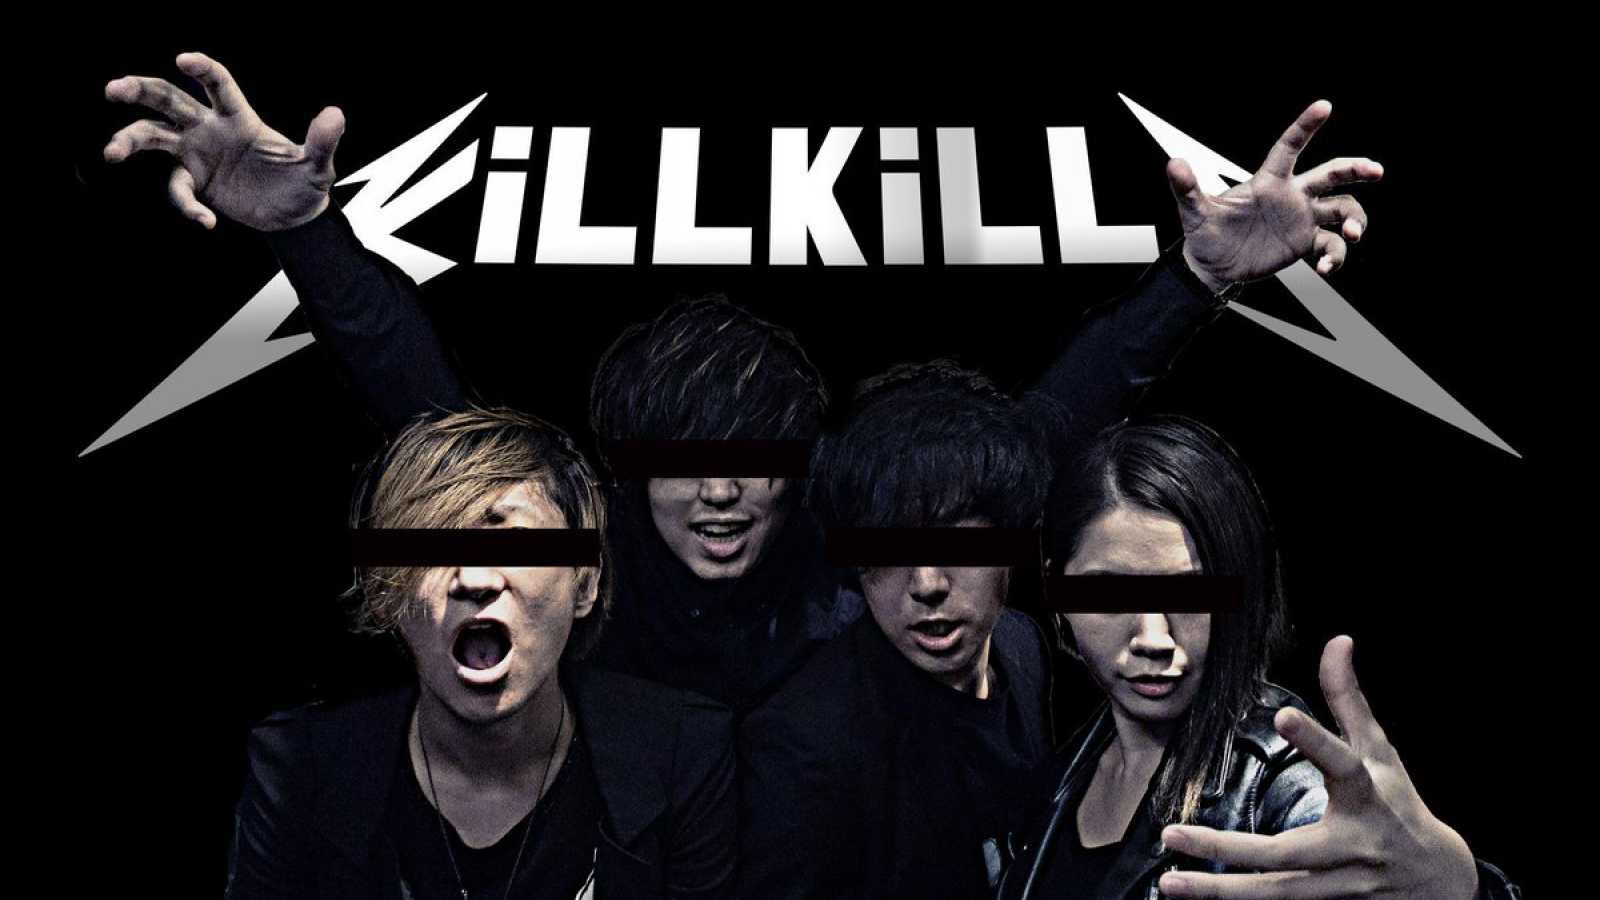 Nowy singiel KiLLKiLLS “Crucify” dostępny w streamingu © Splatter Records